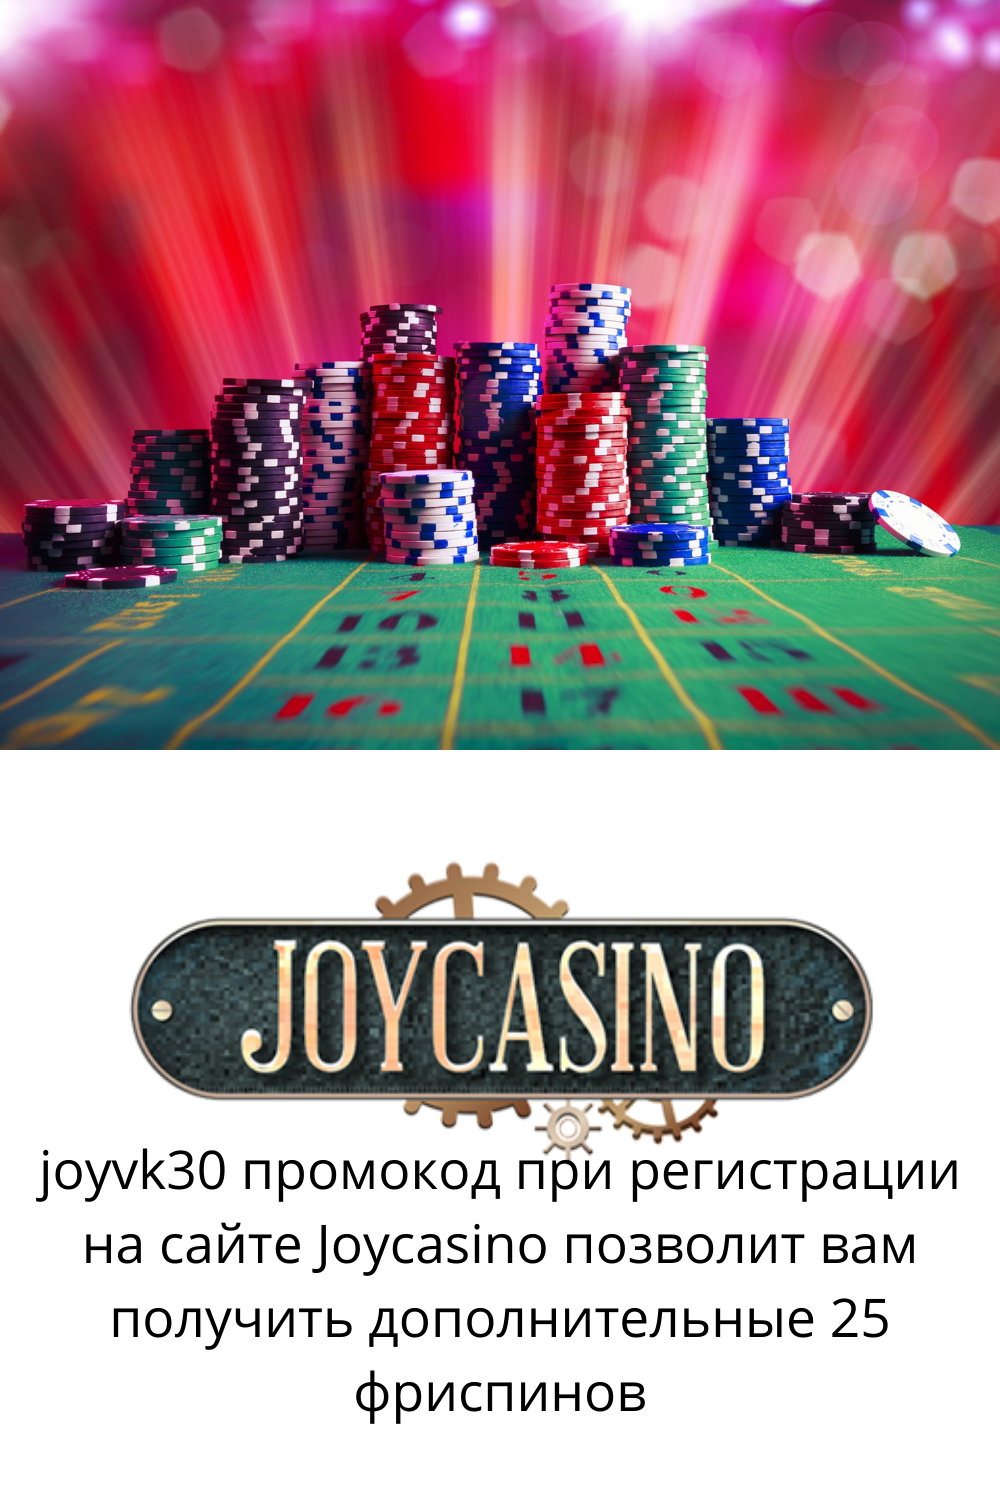 Joy casino игровой клуб официально зеркало. Джойказино казино зеркало. Joycasino зеркало сайта.